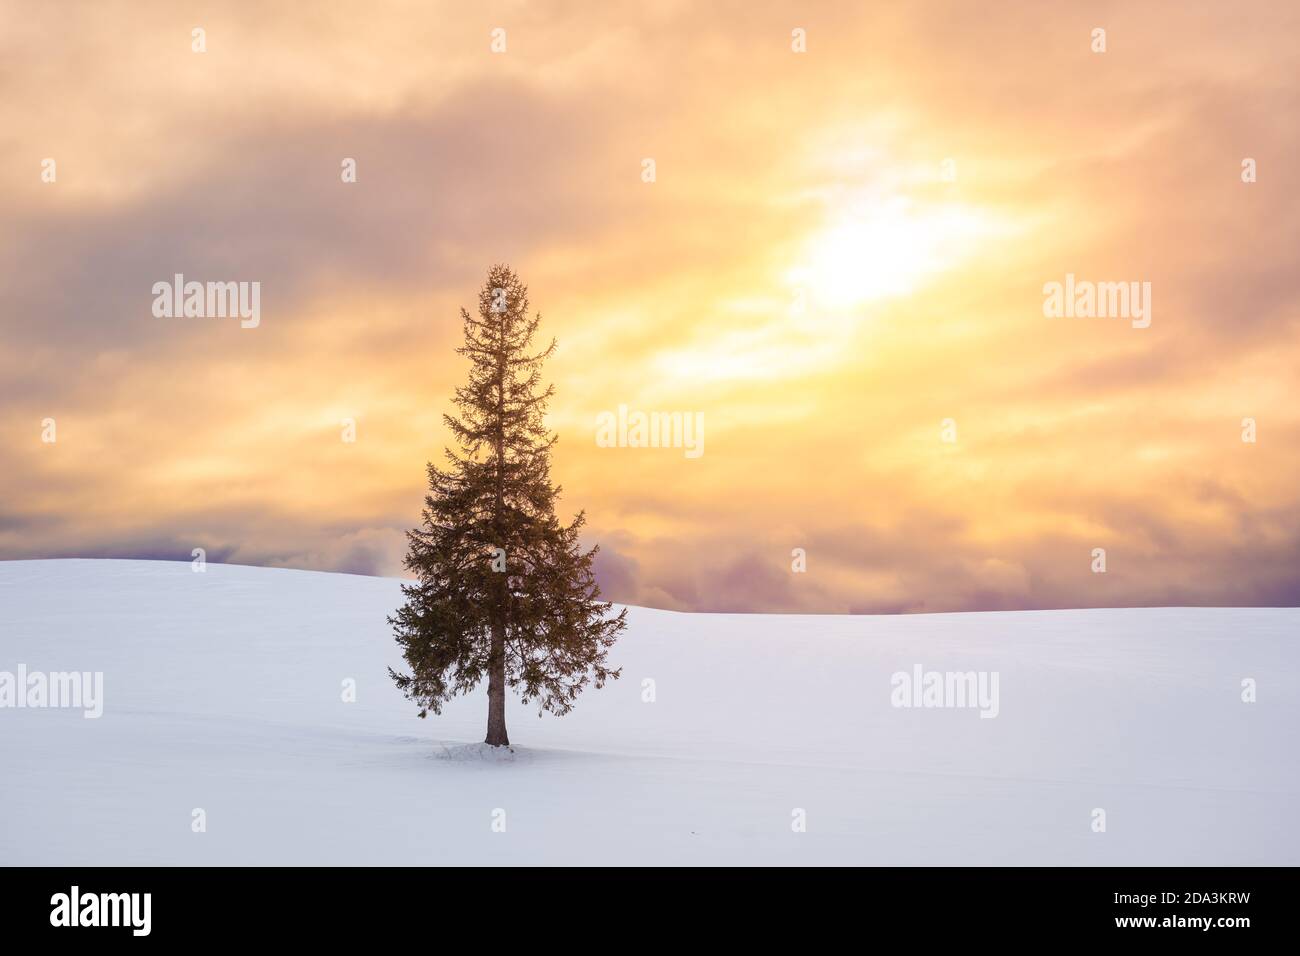 Biei, Hokkaido, Japan at the Christmas Tree in winter. Stock Photo